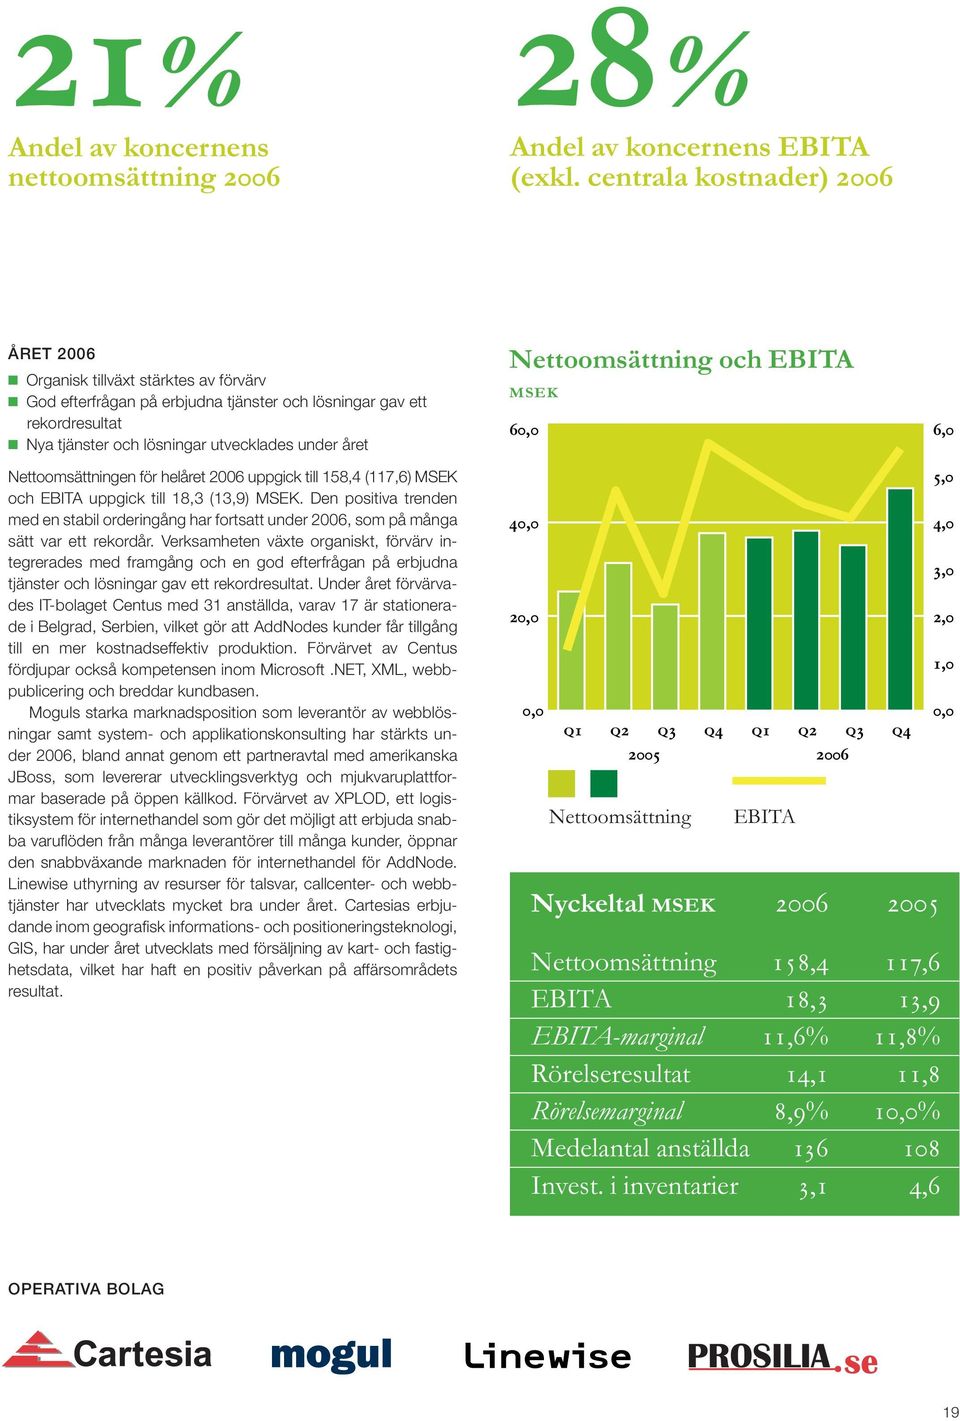 Nettoomsättningen för helåret 2006 uppgick till 158,4 (117,6) MSEK och EBITA uppgick till 18,3 (13,9) MSEK.